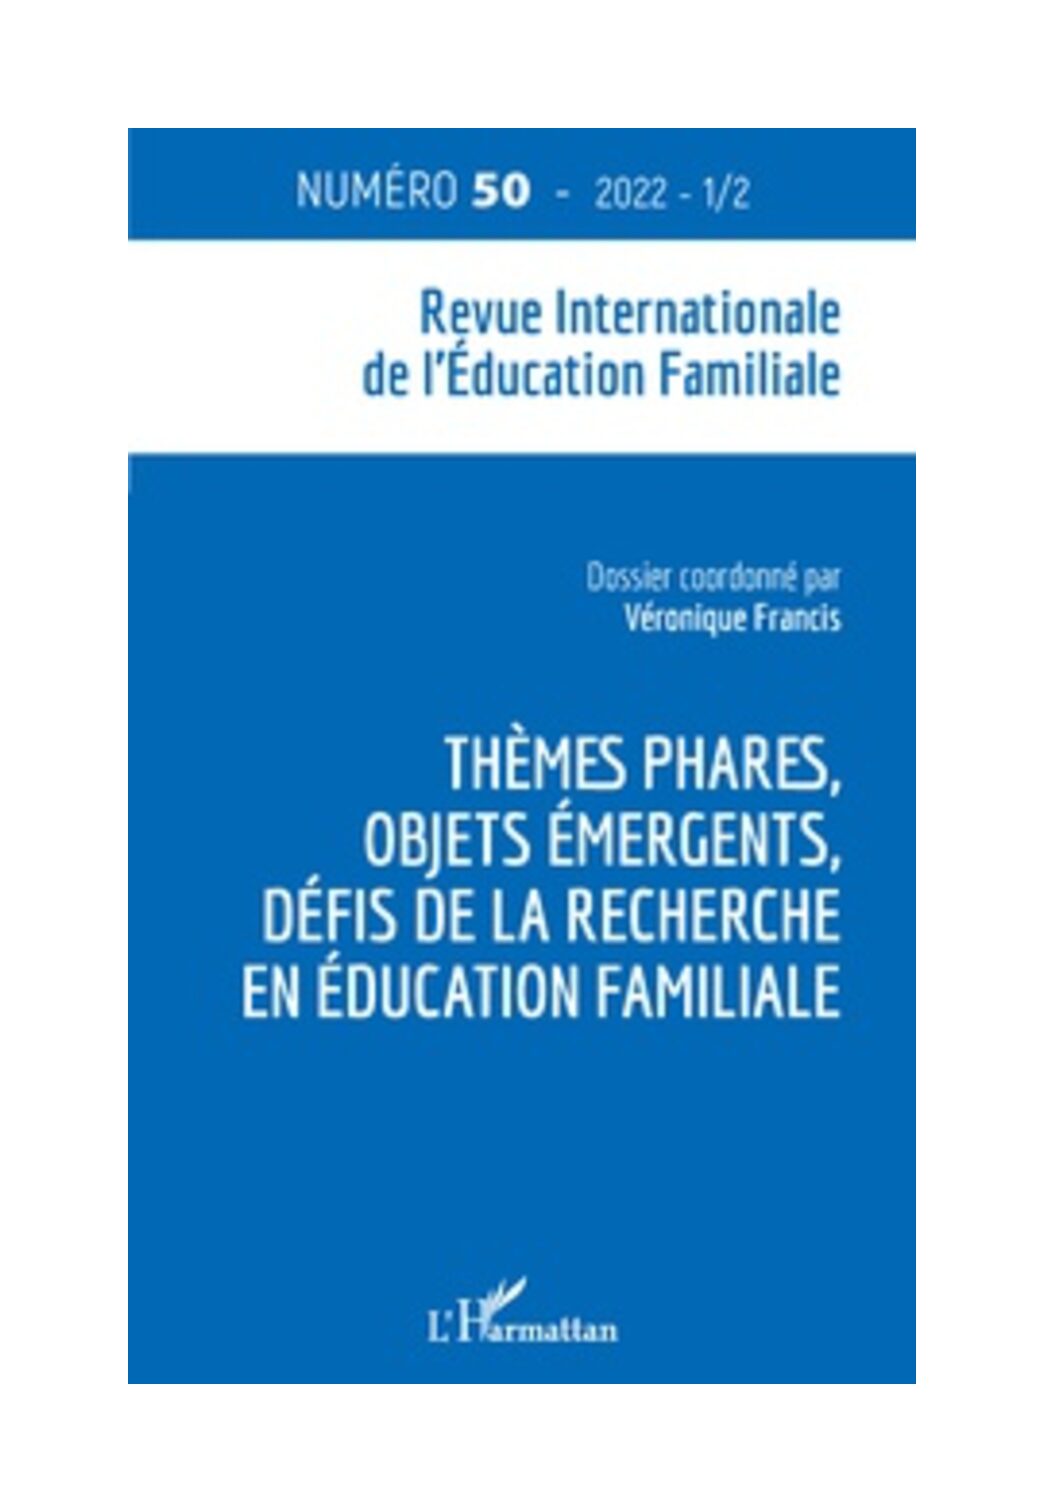 Vient de paraître ! La revue internationale de l’éducation familiale n° 50 : « Thèmes phares, objets émergents, défis de la recherche en éducation familiale »